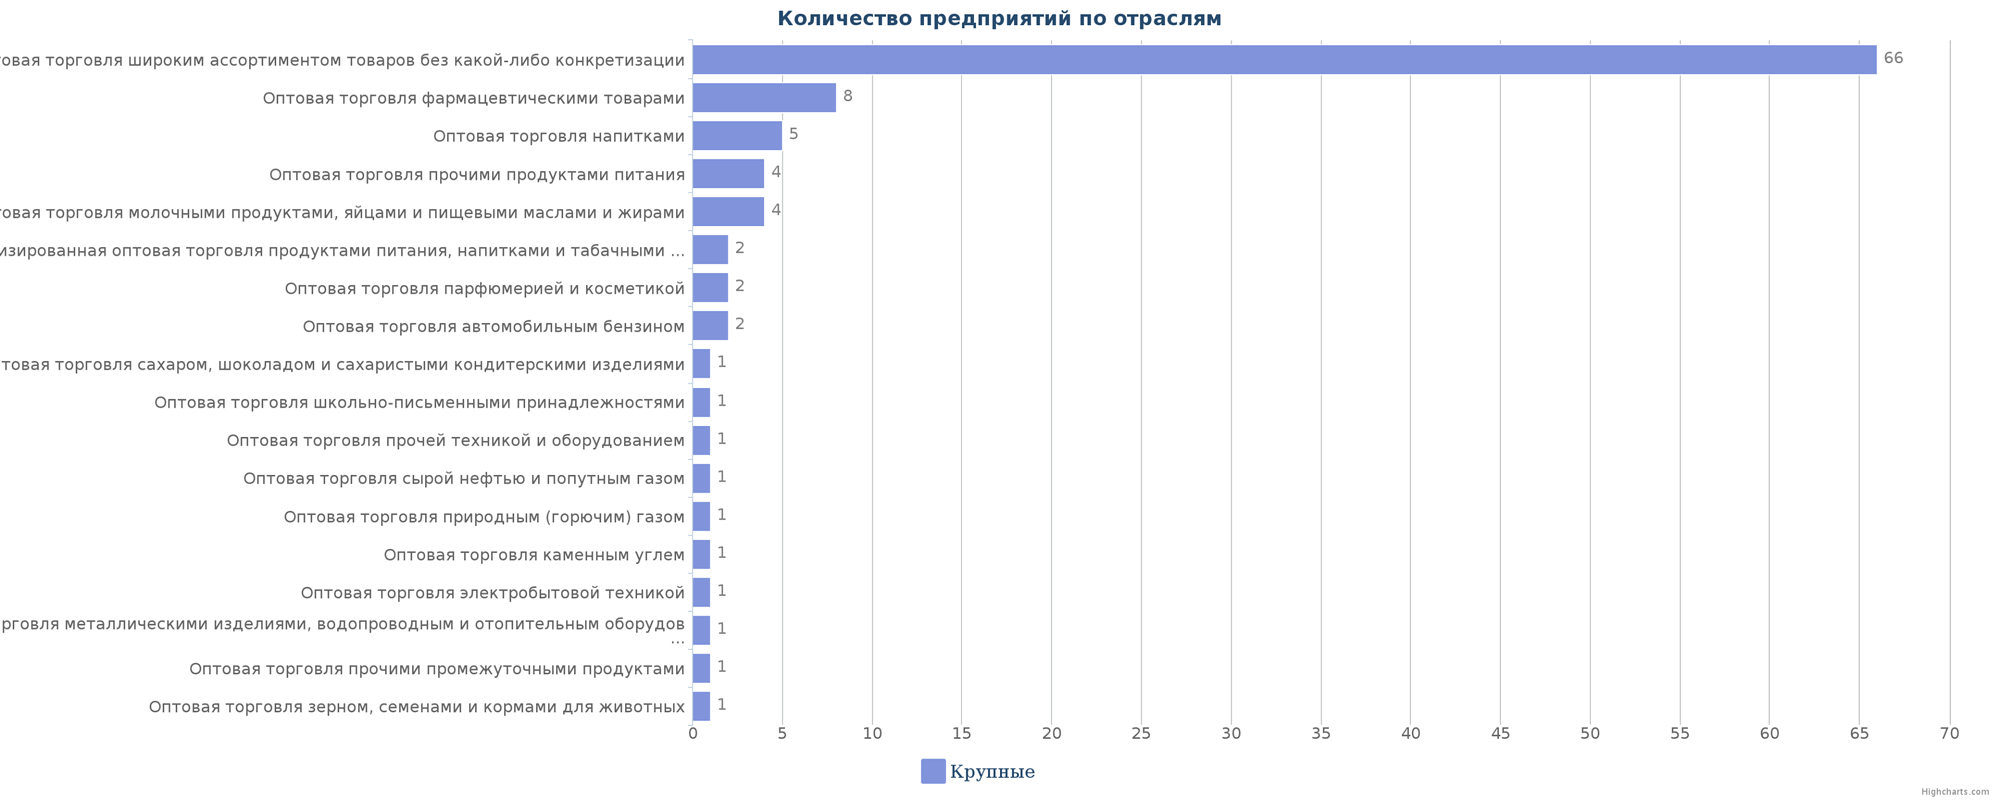 Оптовые компании Казахстана по отраслям